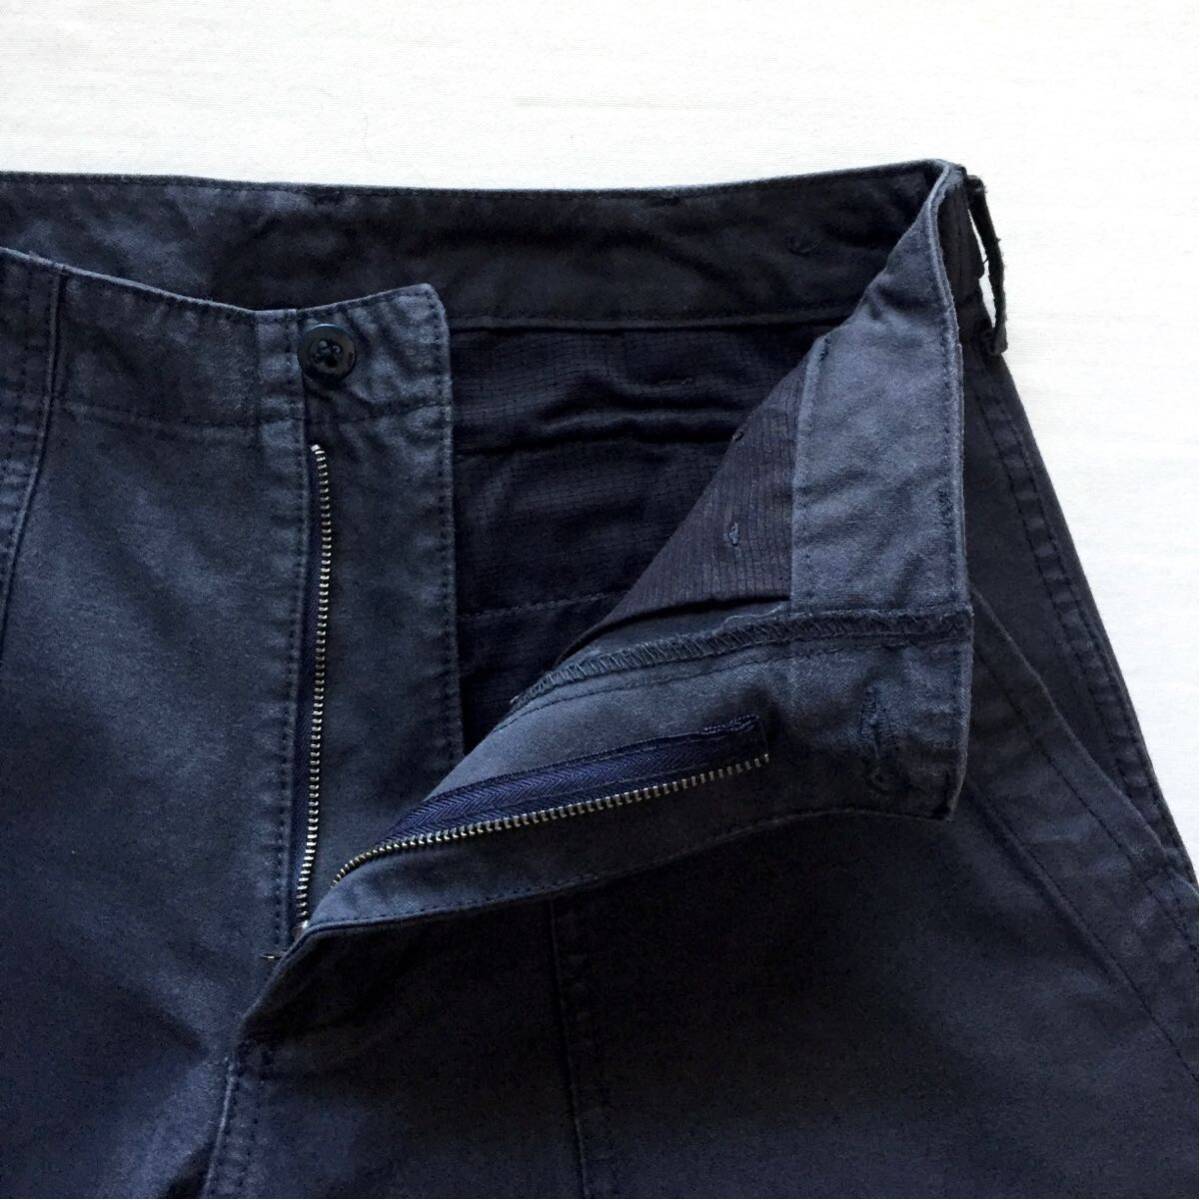 美品 BEAMS PLUS MIL Utility Trousers Baker pants ビームスプラス ミリタリー トラウザーズ ベイカーパンツ Sサイズ U.S.ARMY BEAMS＋の画像4